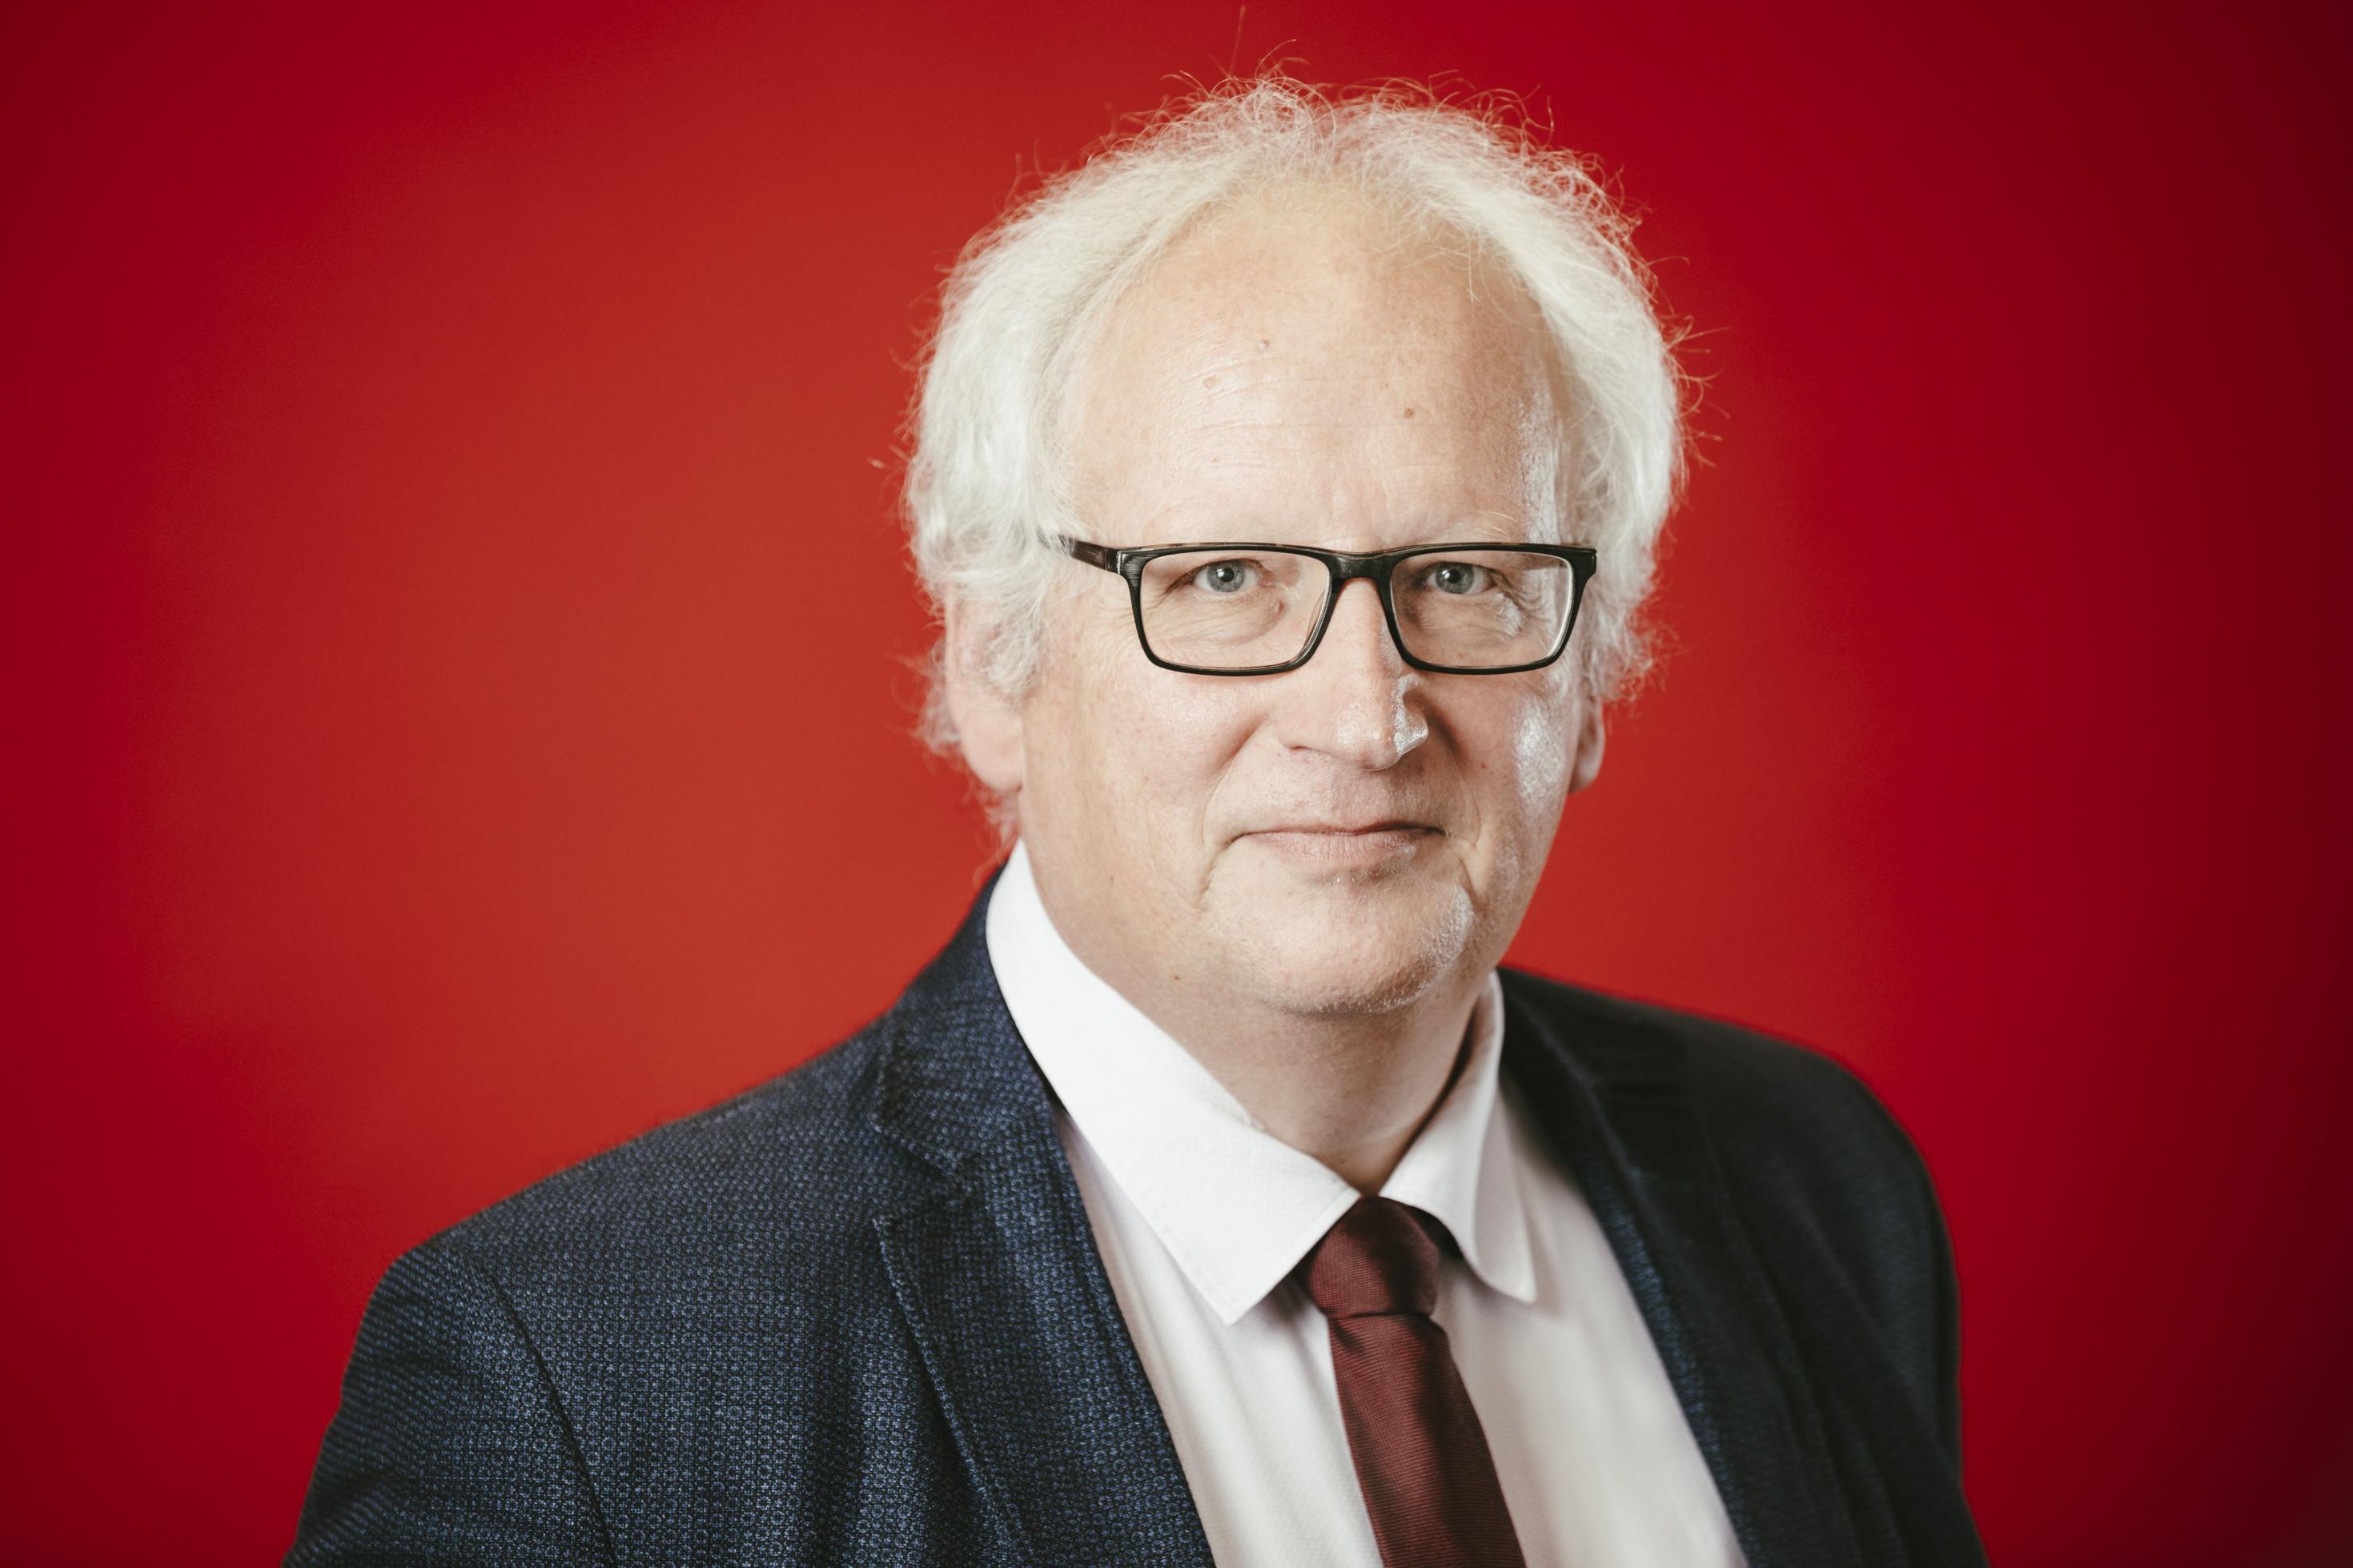 Bernhard Emunds von der Hochschule Sankt Georgen in Frankfurt/Main hat weiße Haare und trägt eine dunkle Brille. Das Portrait zeigt in in Anzug und Krawatte vor rotem Hintergrund.